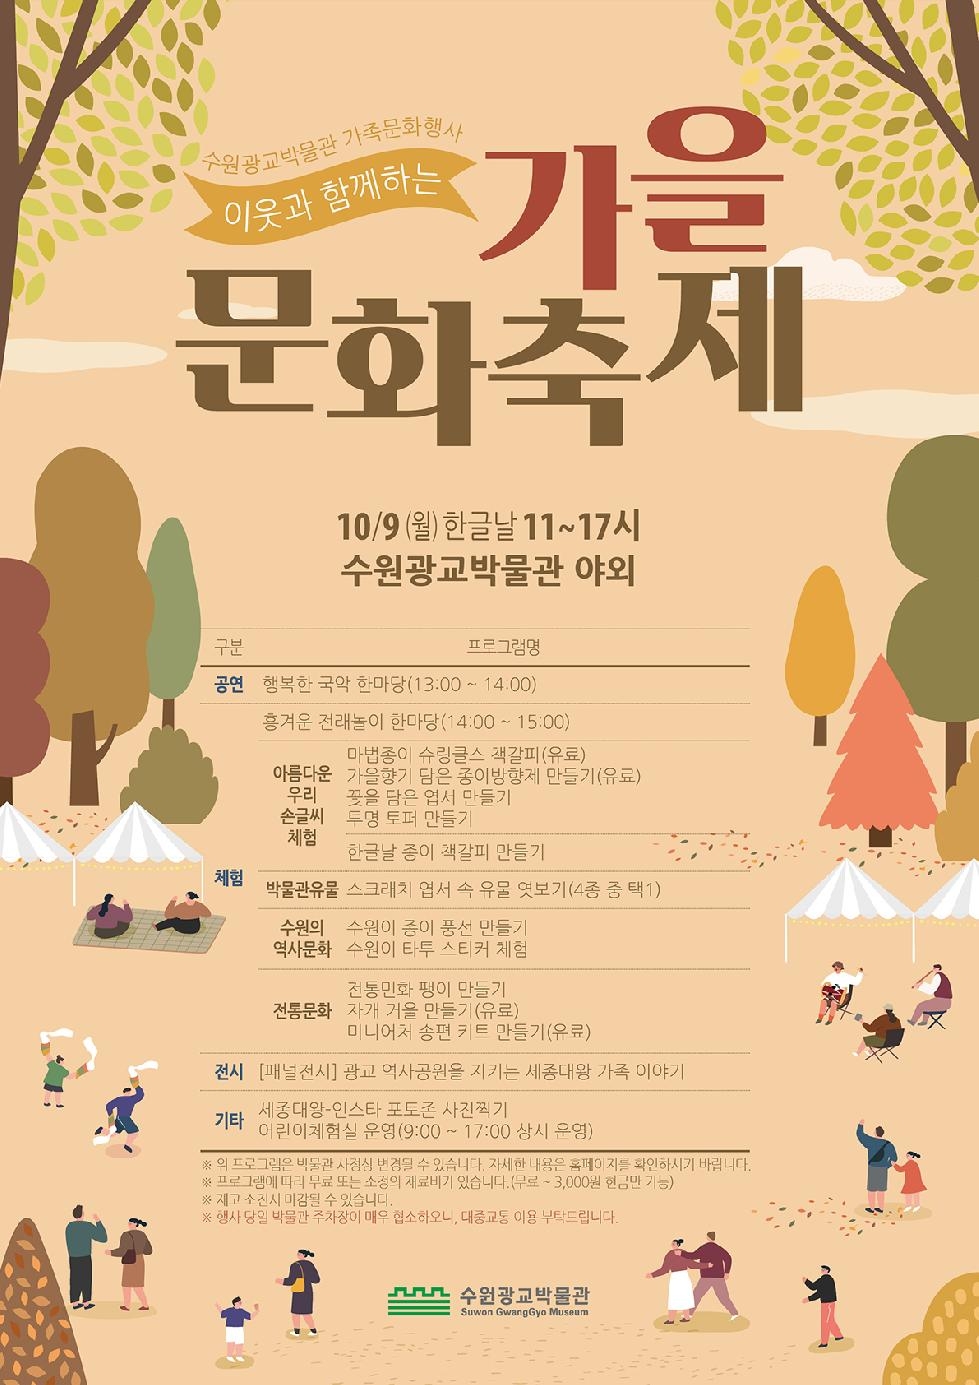 수원광교박물관, 가족문화행사‘이웃과 함께하는 가을문화축제’ 개최